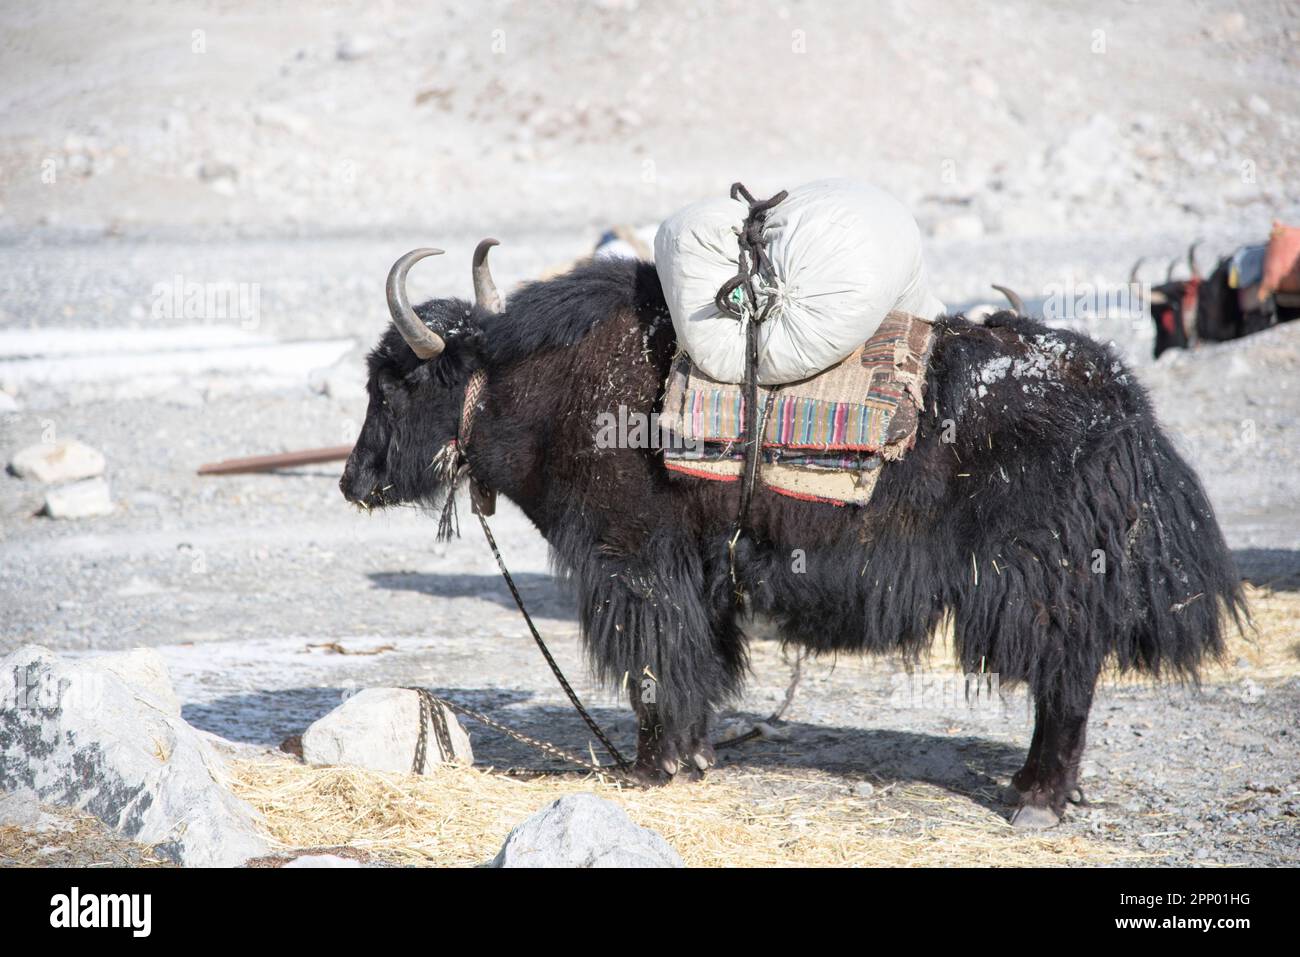 Un yak se tient dans un paysage rocheux avec un sac de selle et une selle sur son dos Banque D'Images